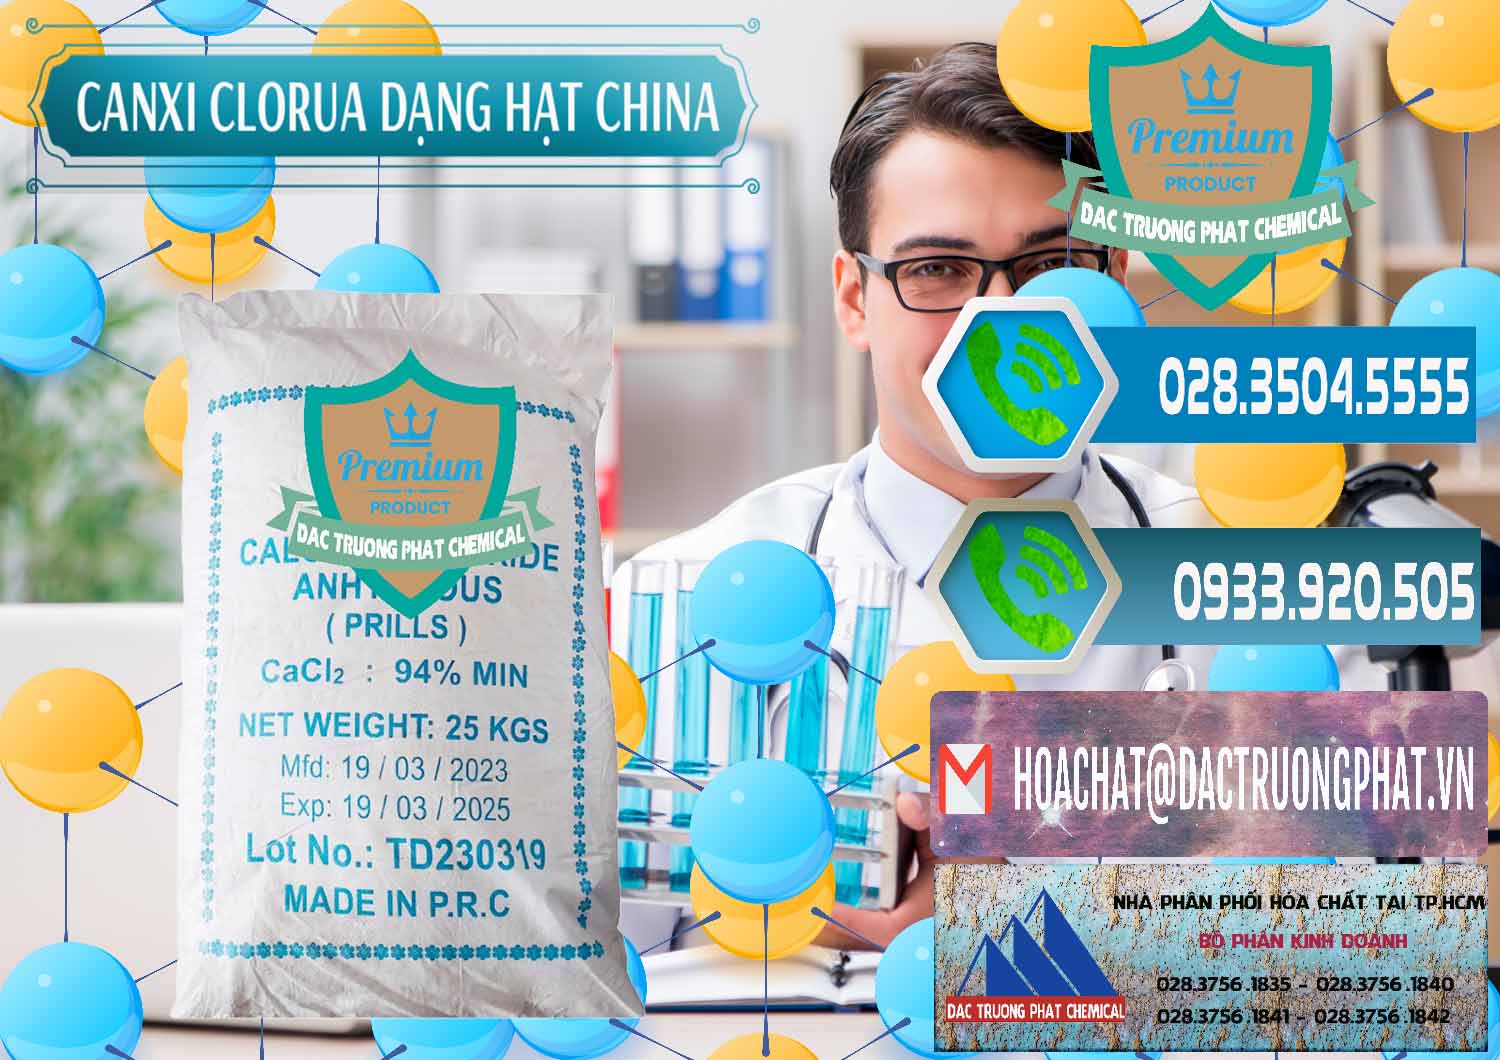 Công ty chuyên bán & cung cấp CaCl2 – Canxi Clorua 94% Dạng Hạt Trung Quốc China - 0373 - Cty bán ( phân phối ) hóa chất tại TP.HCM - congtyhoachat.net